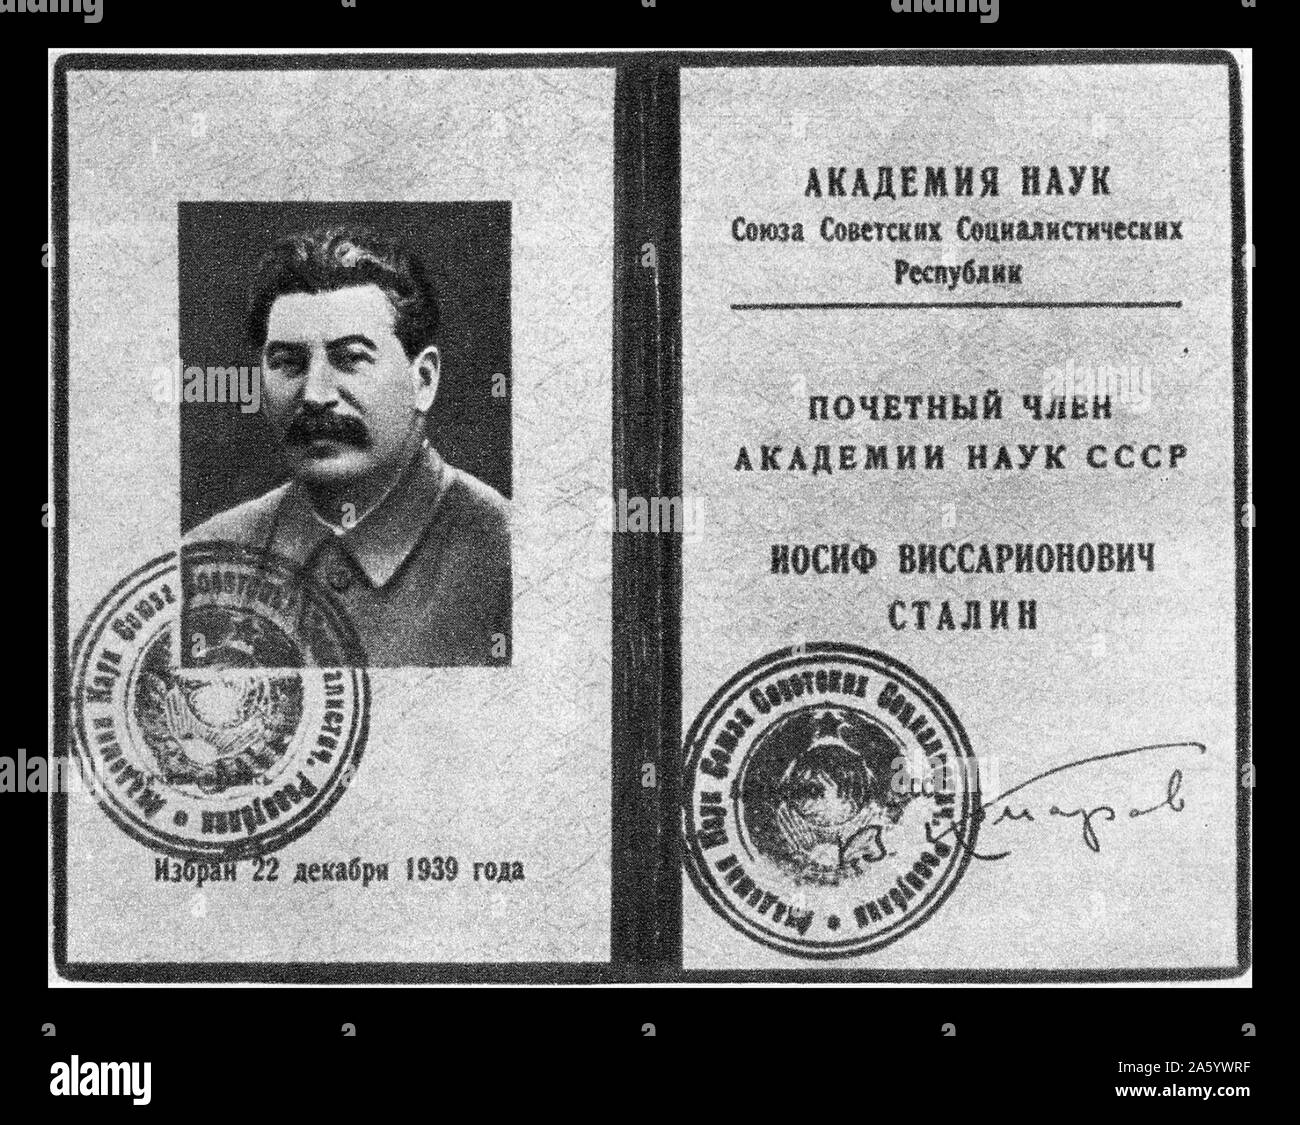 Document d'adhésion de 1939, montrant le leader soviétique Joseph Staline en tant que membre honoraire de l'Académie des Sciences de l'Union Soviétique Banque D'Images